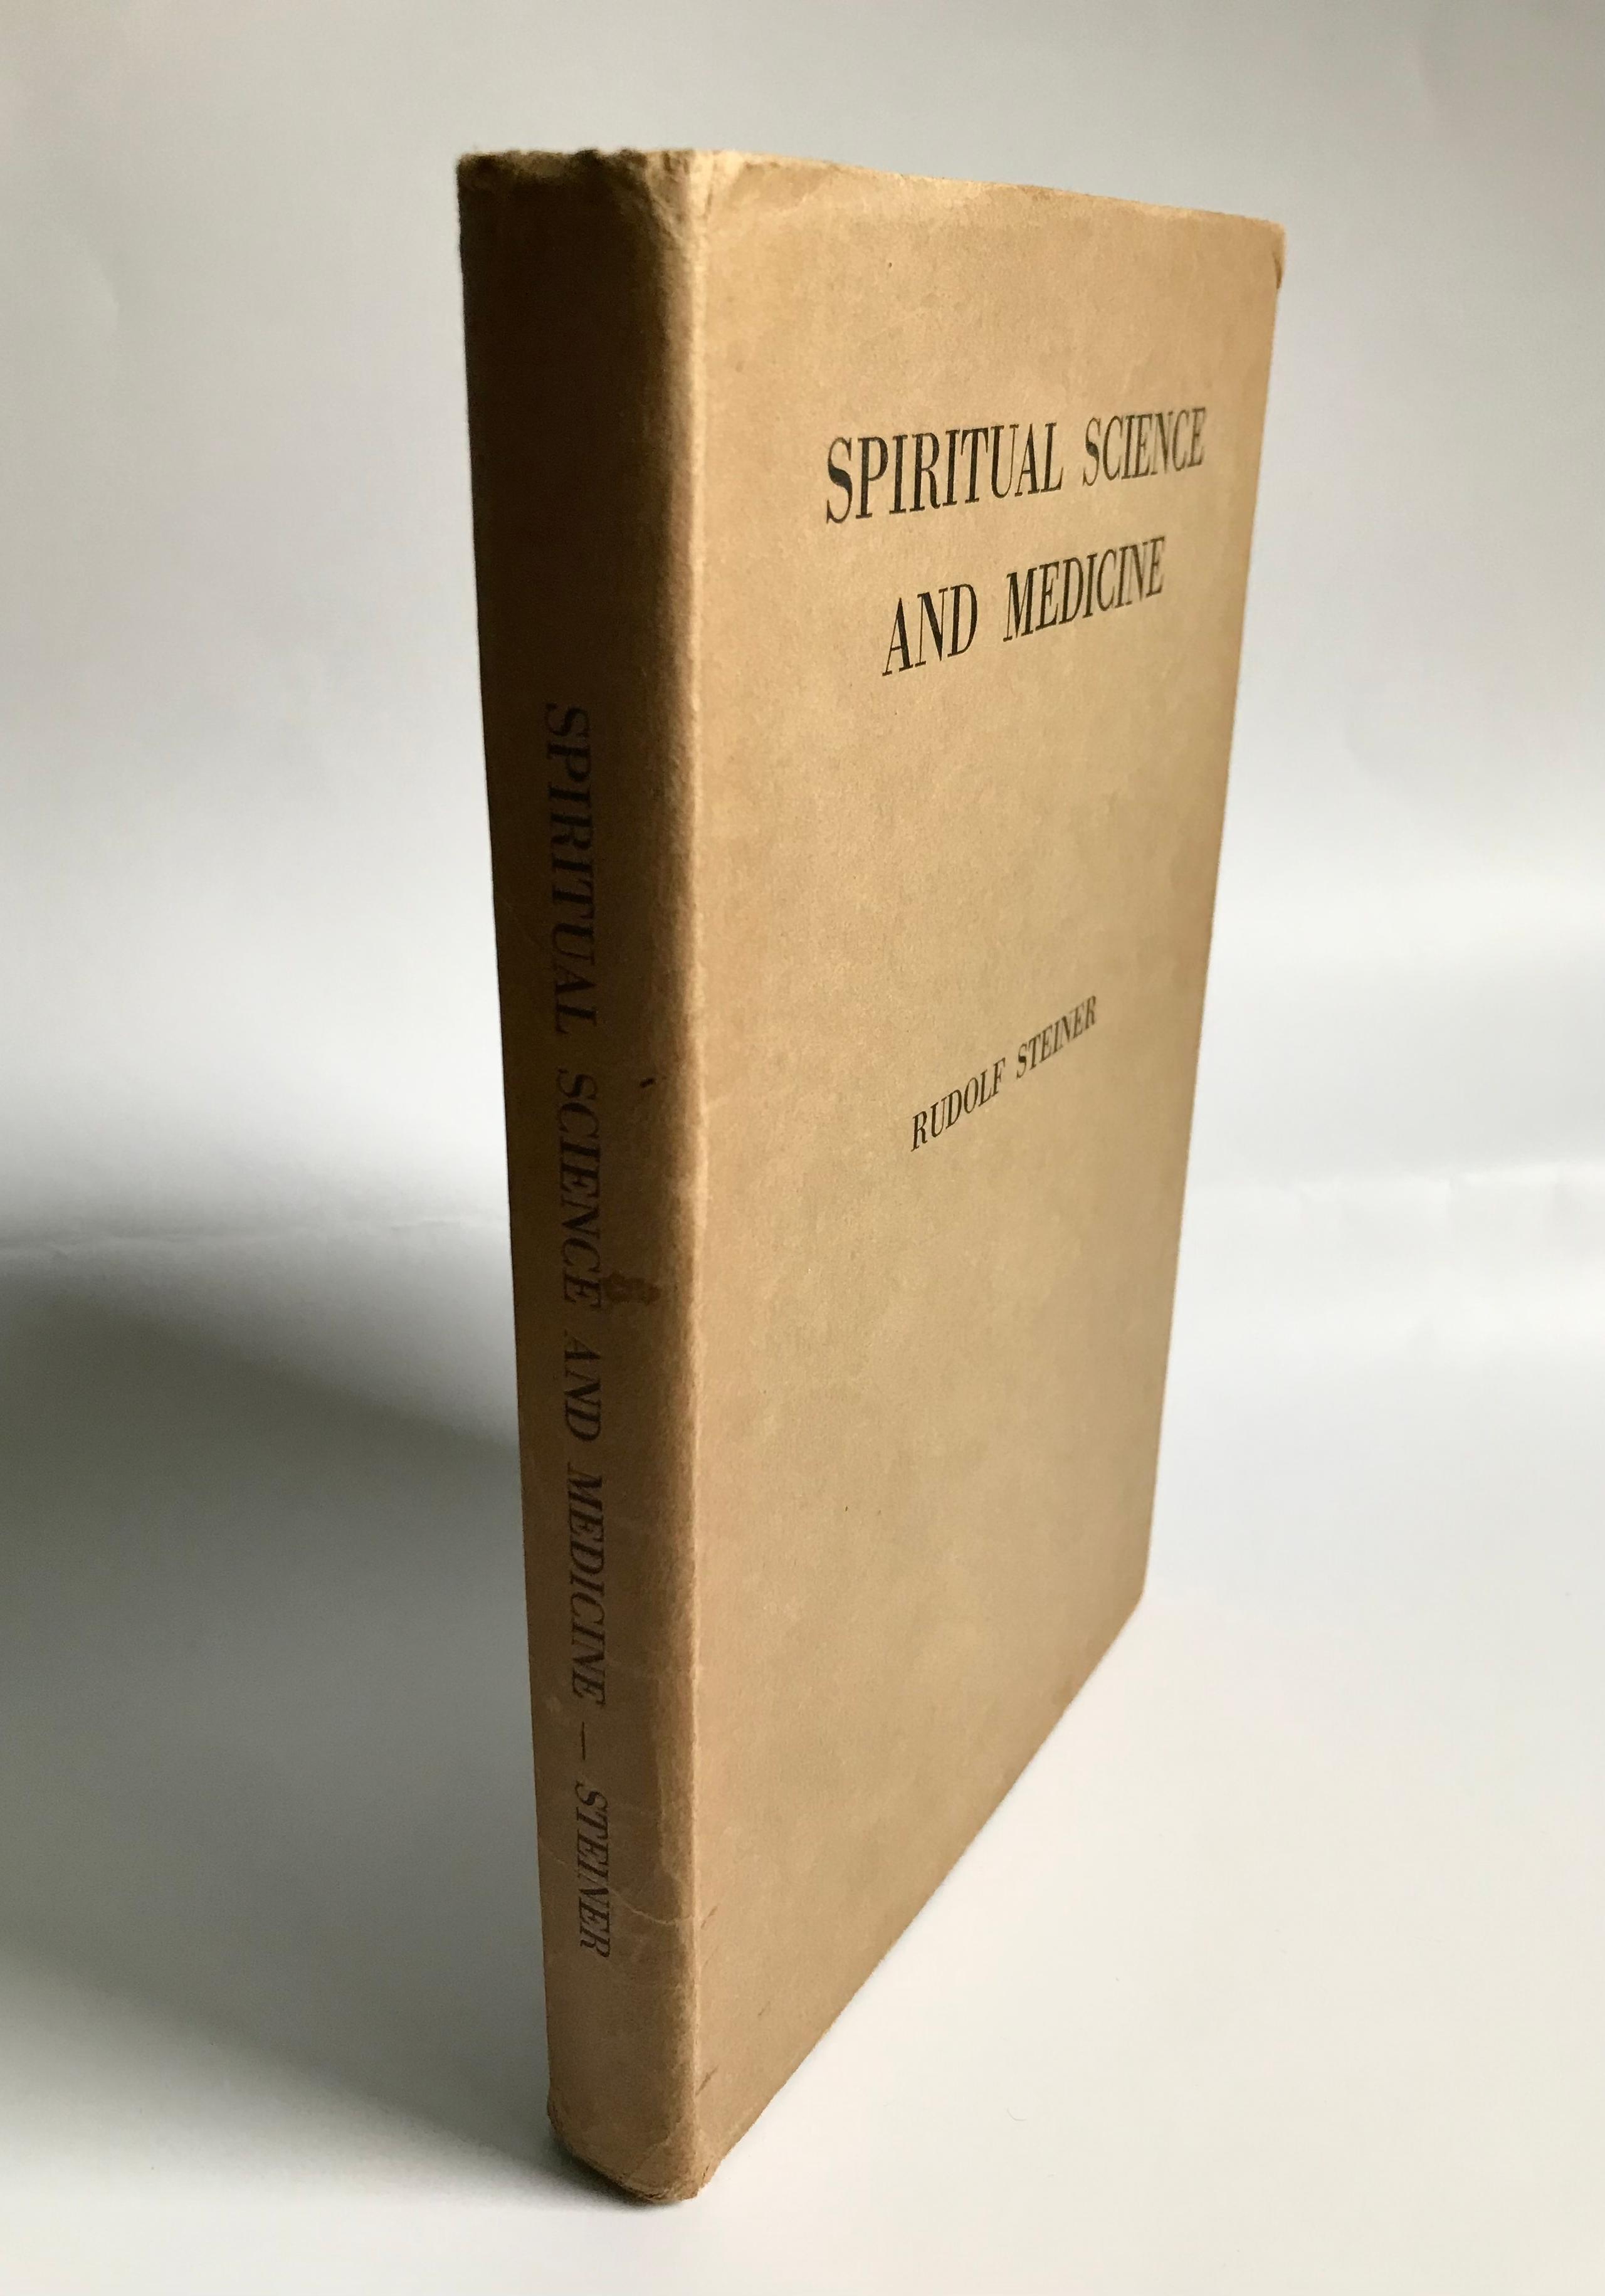 Spiritual Science And Medicine by Rudolf Steiner